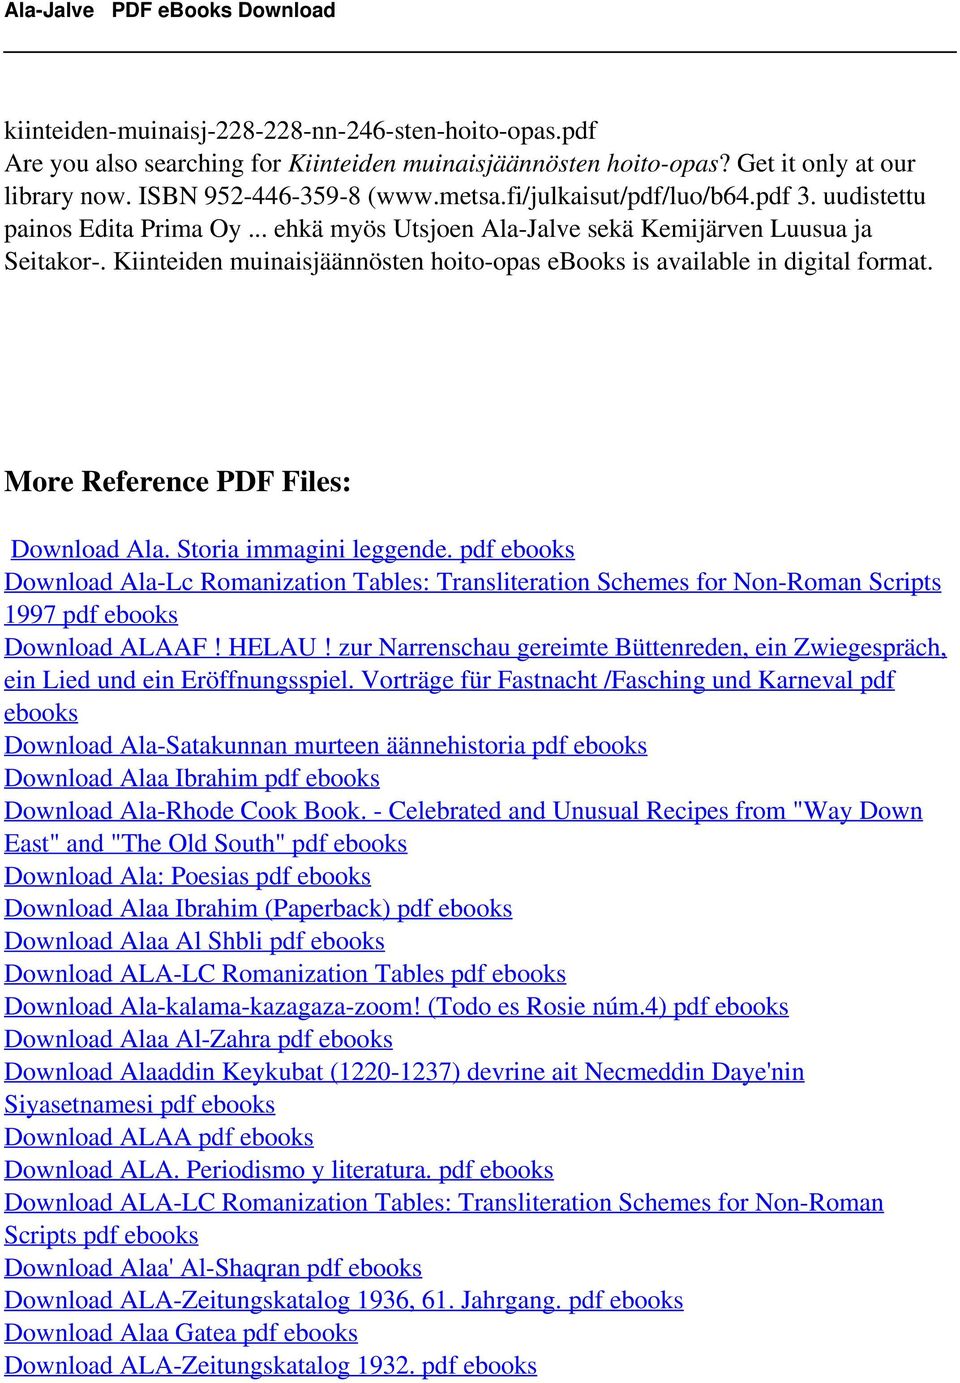 Kiinteiden muinaisjäännösten hoito-opas ebooks is More Reference PDF Files: Download Ala. Storia immagini leggende.